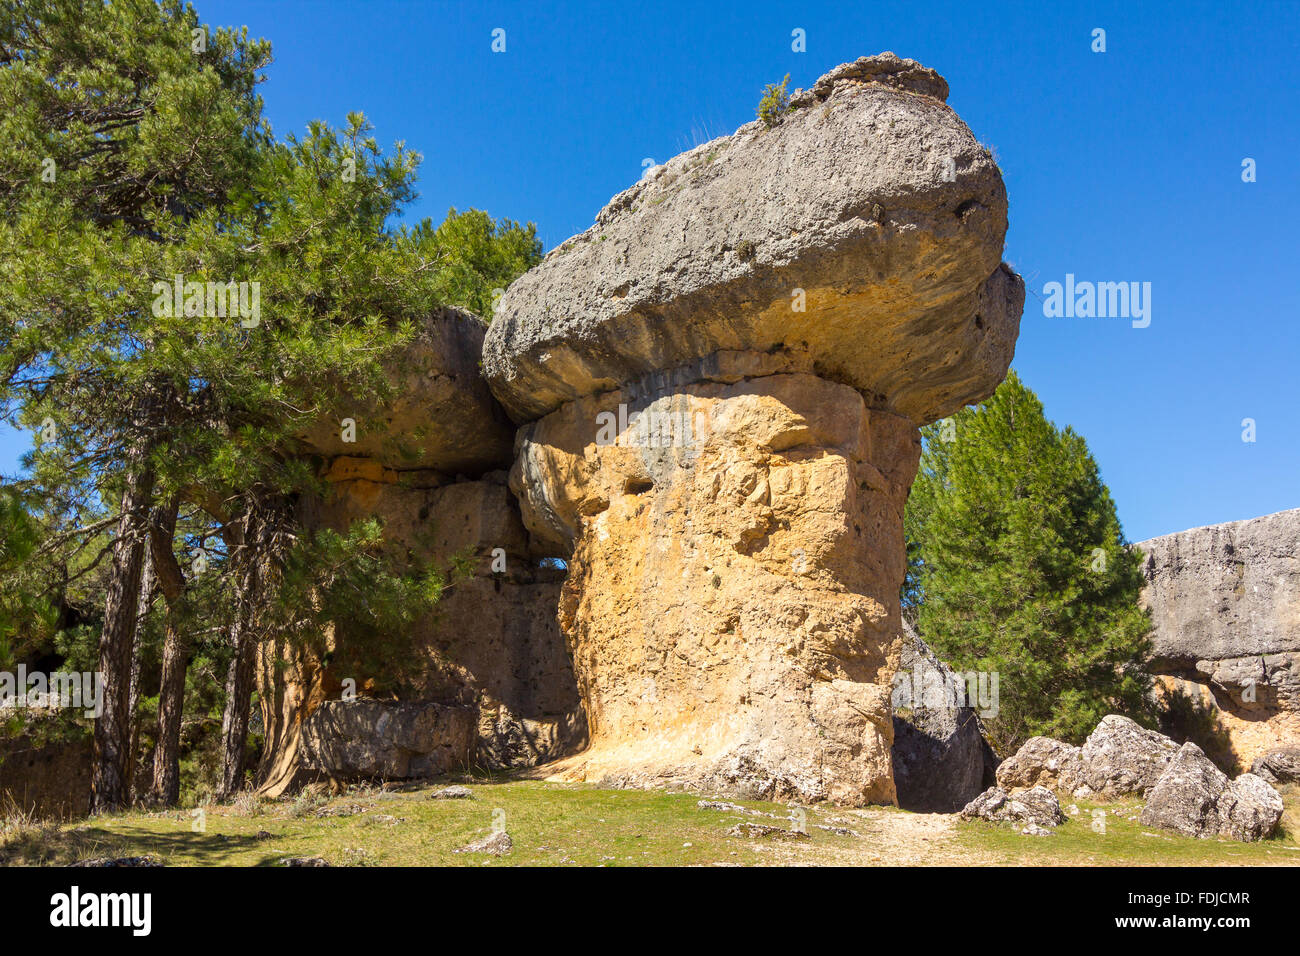 Des rochers avec des formes capricieuses dans la ville enchantée de Cuenca, Espagne Banque D'Images